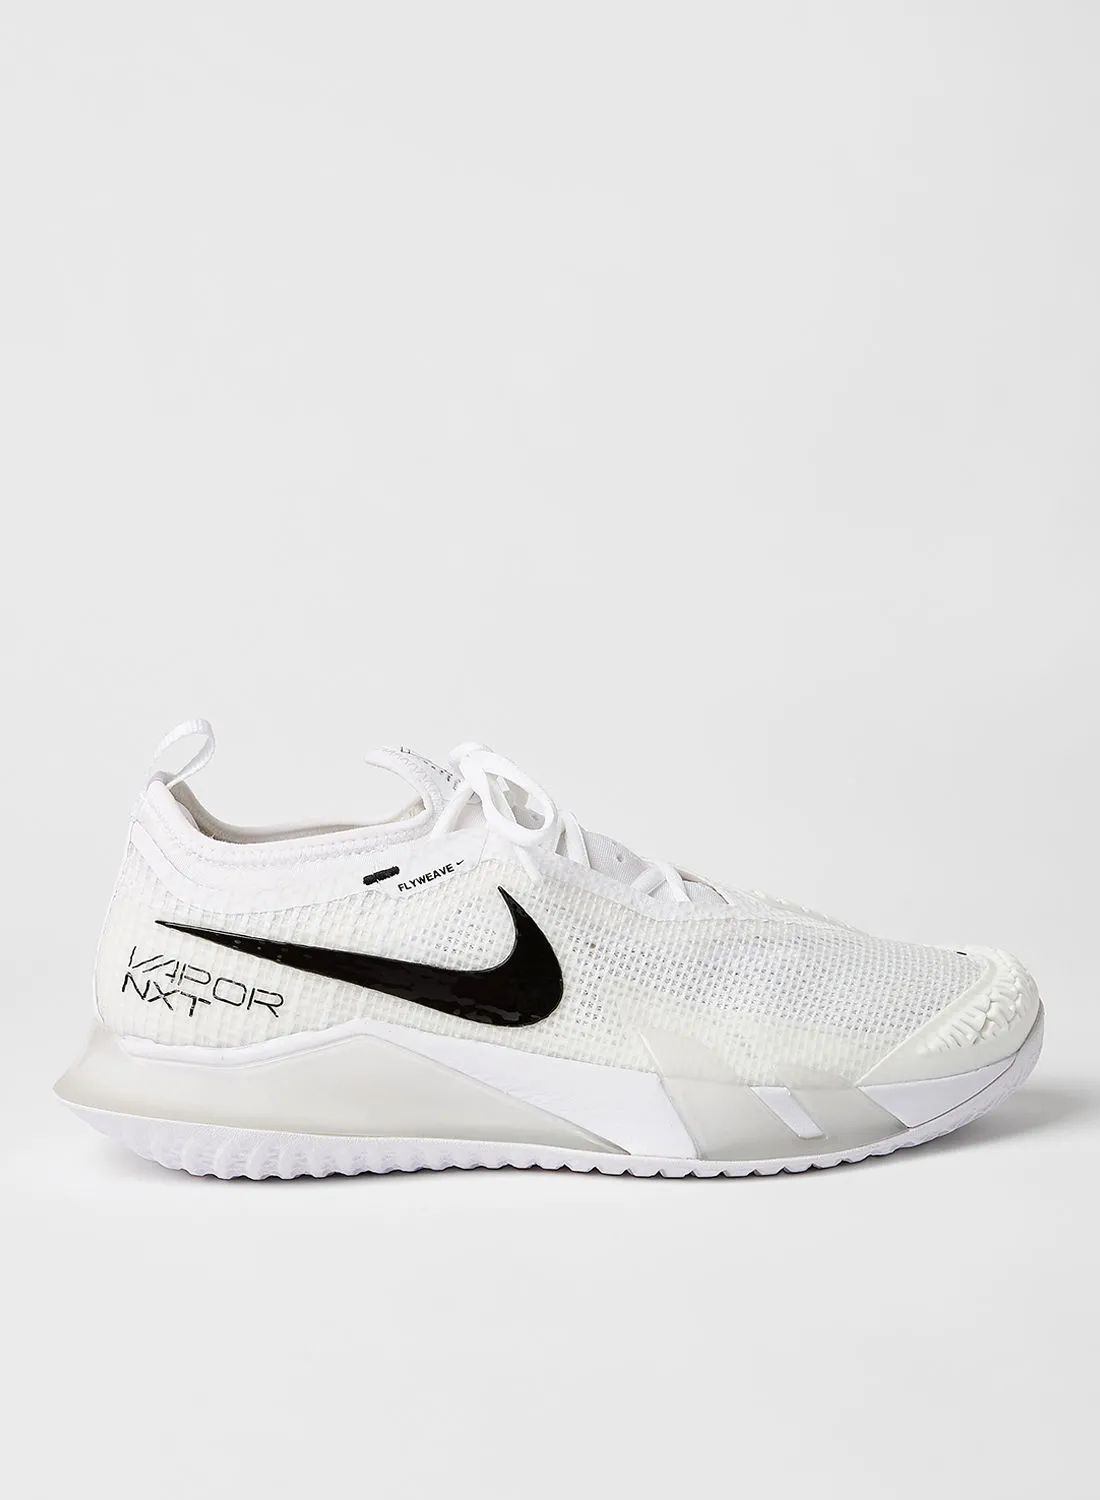 Nike NikeCourt React Vapor NXT Hard-Court Tennis Shoes White